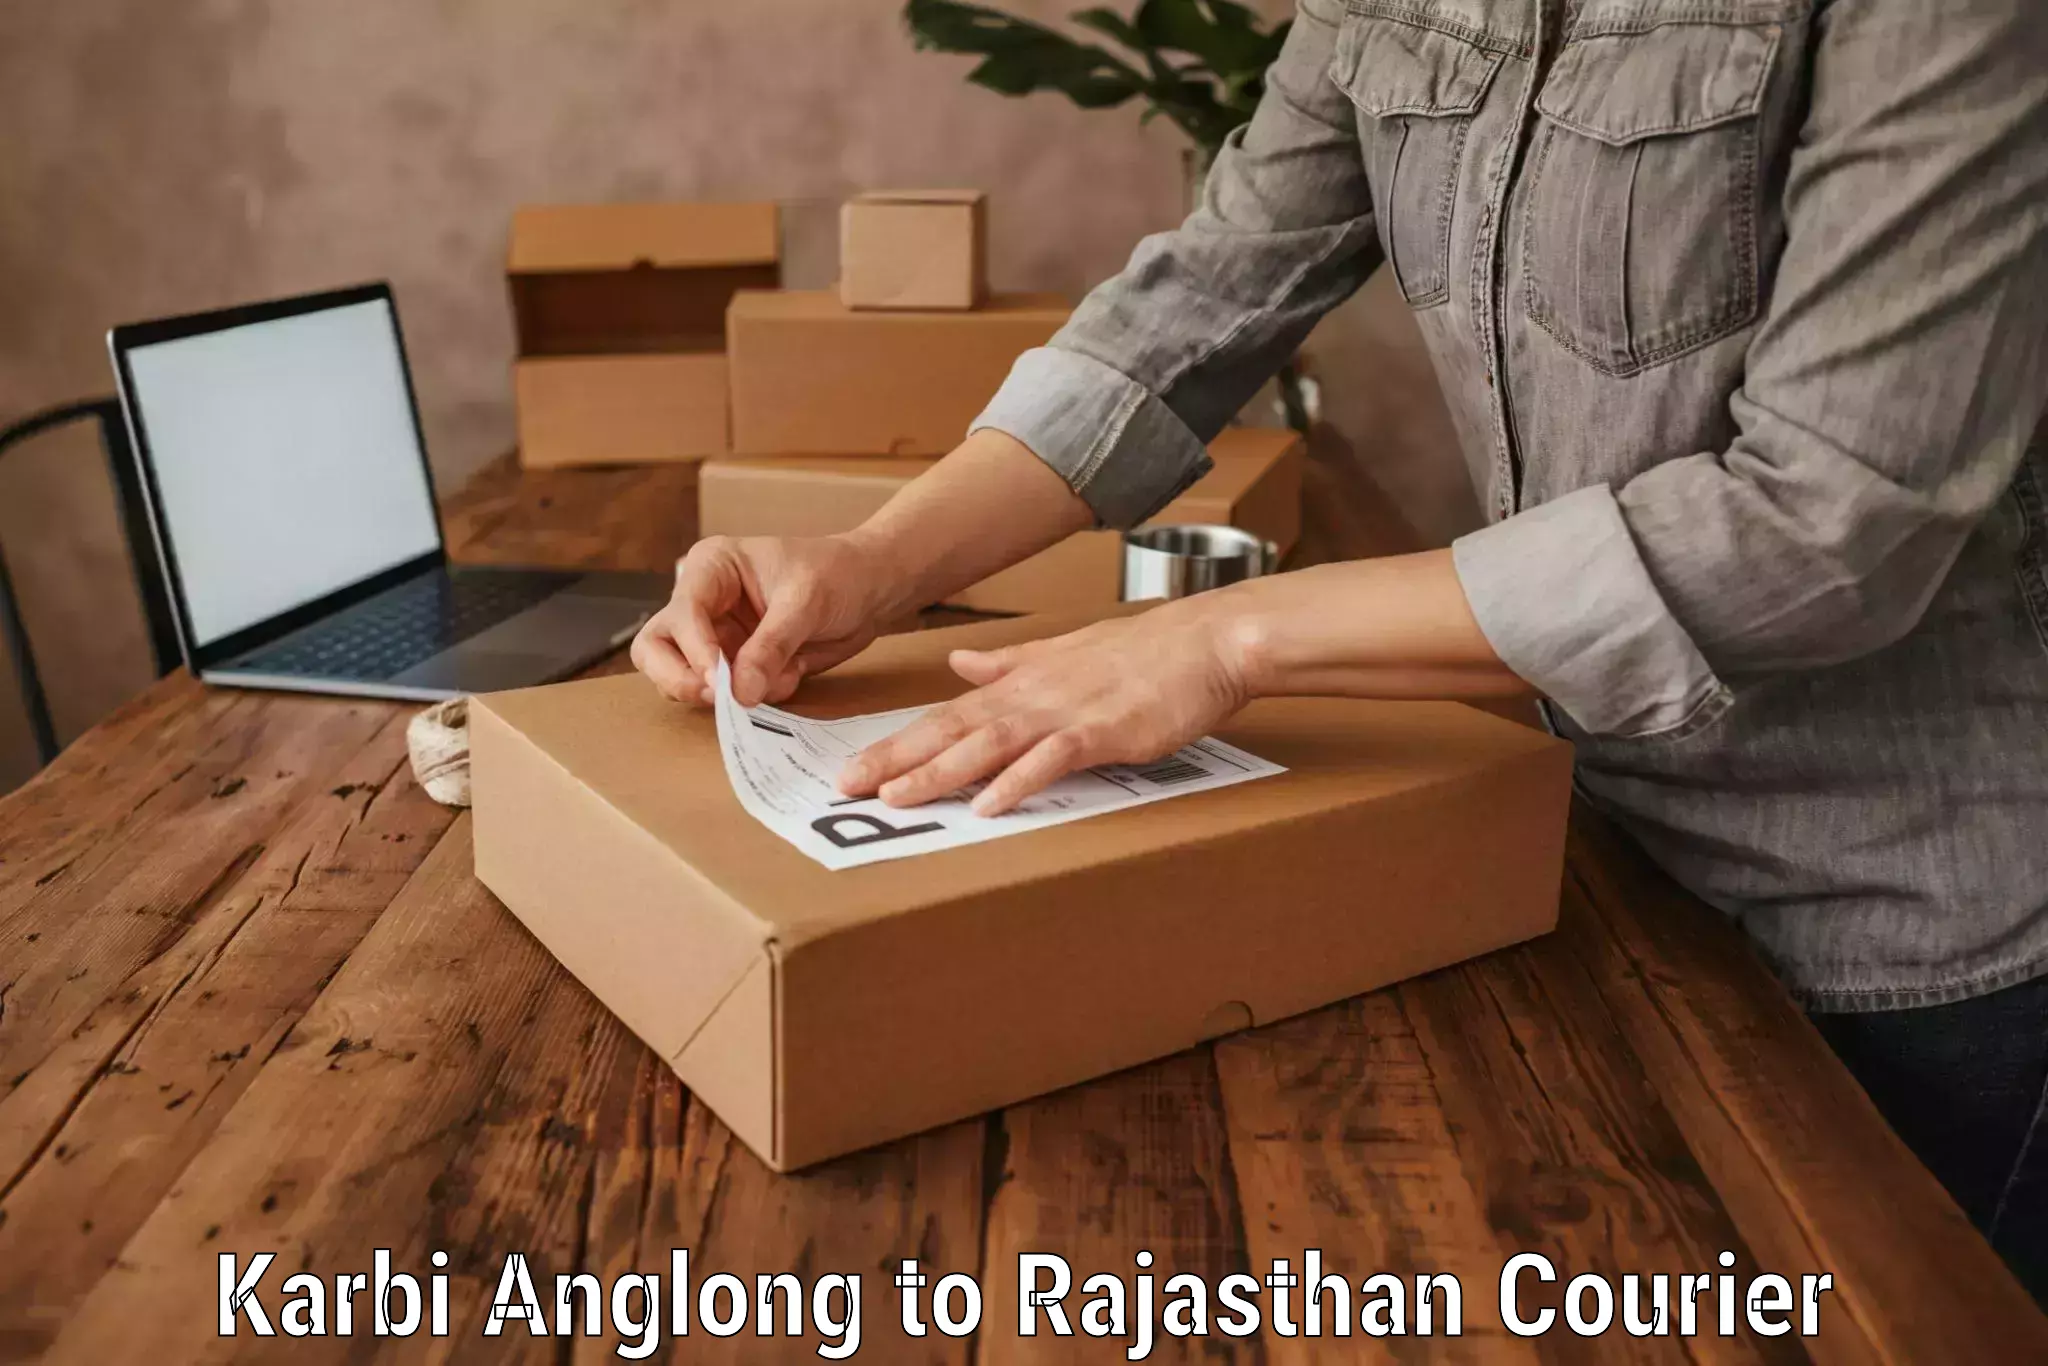 Baggage transport scheduler Karbi Anglong to Rajasthan